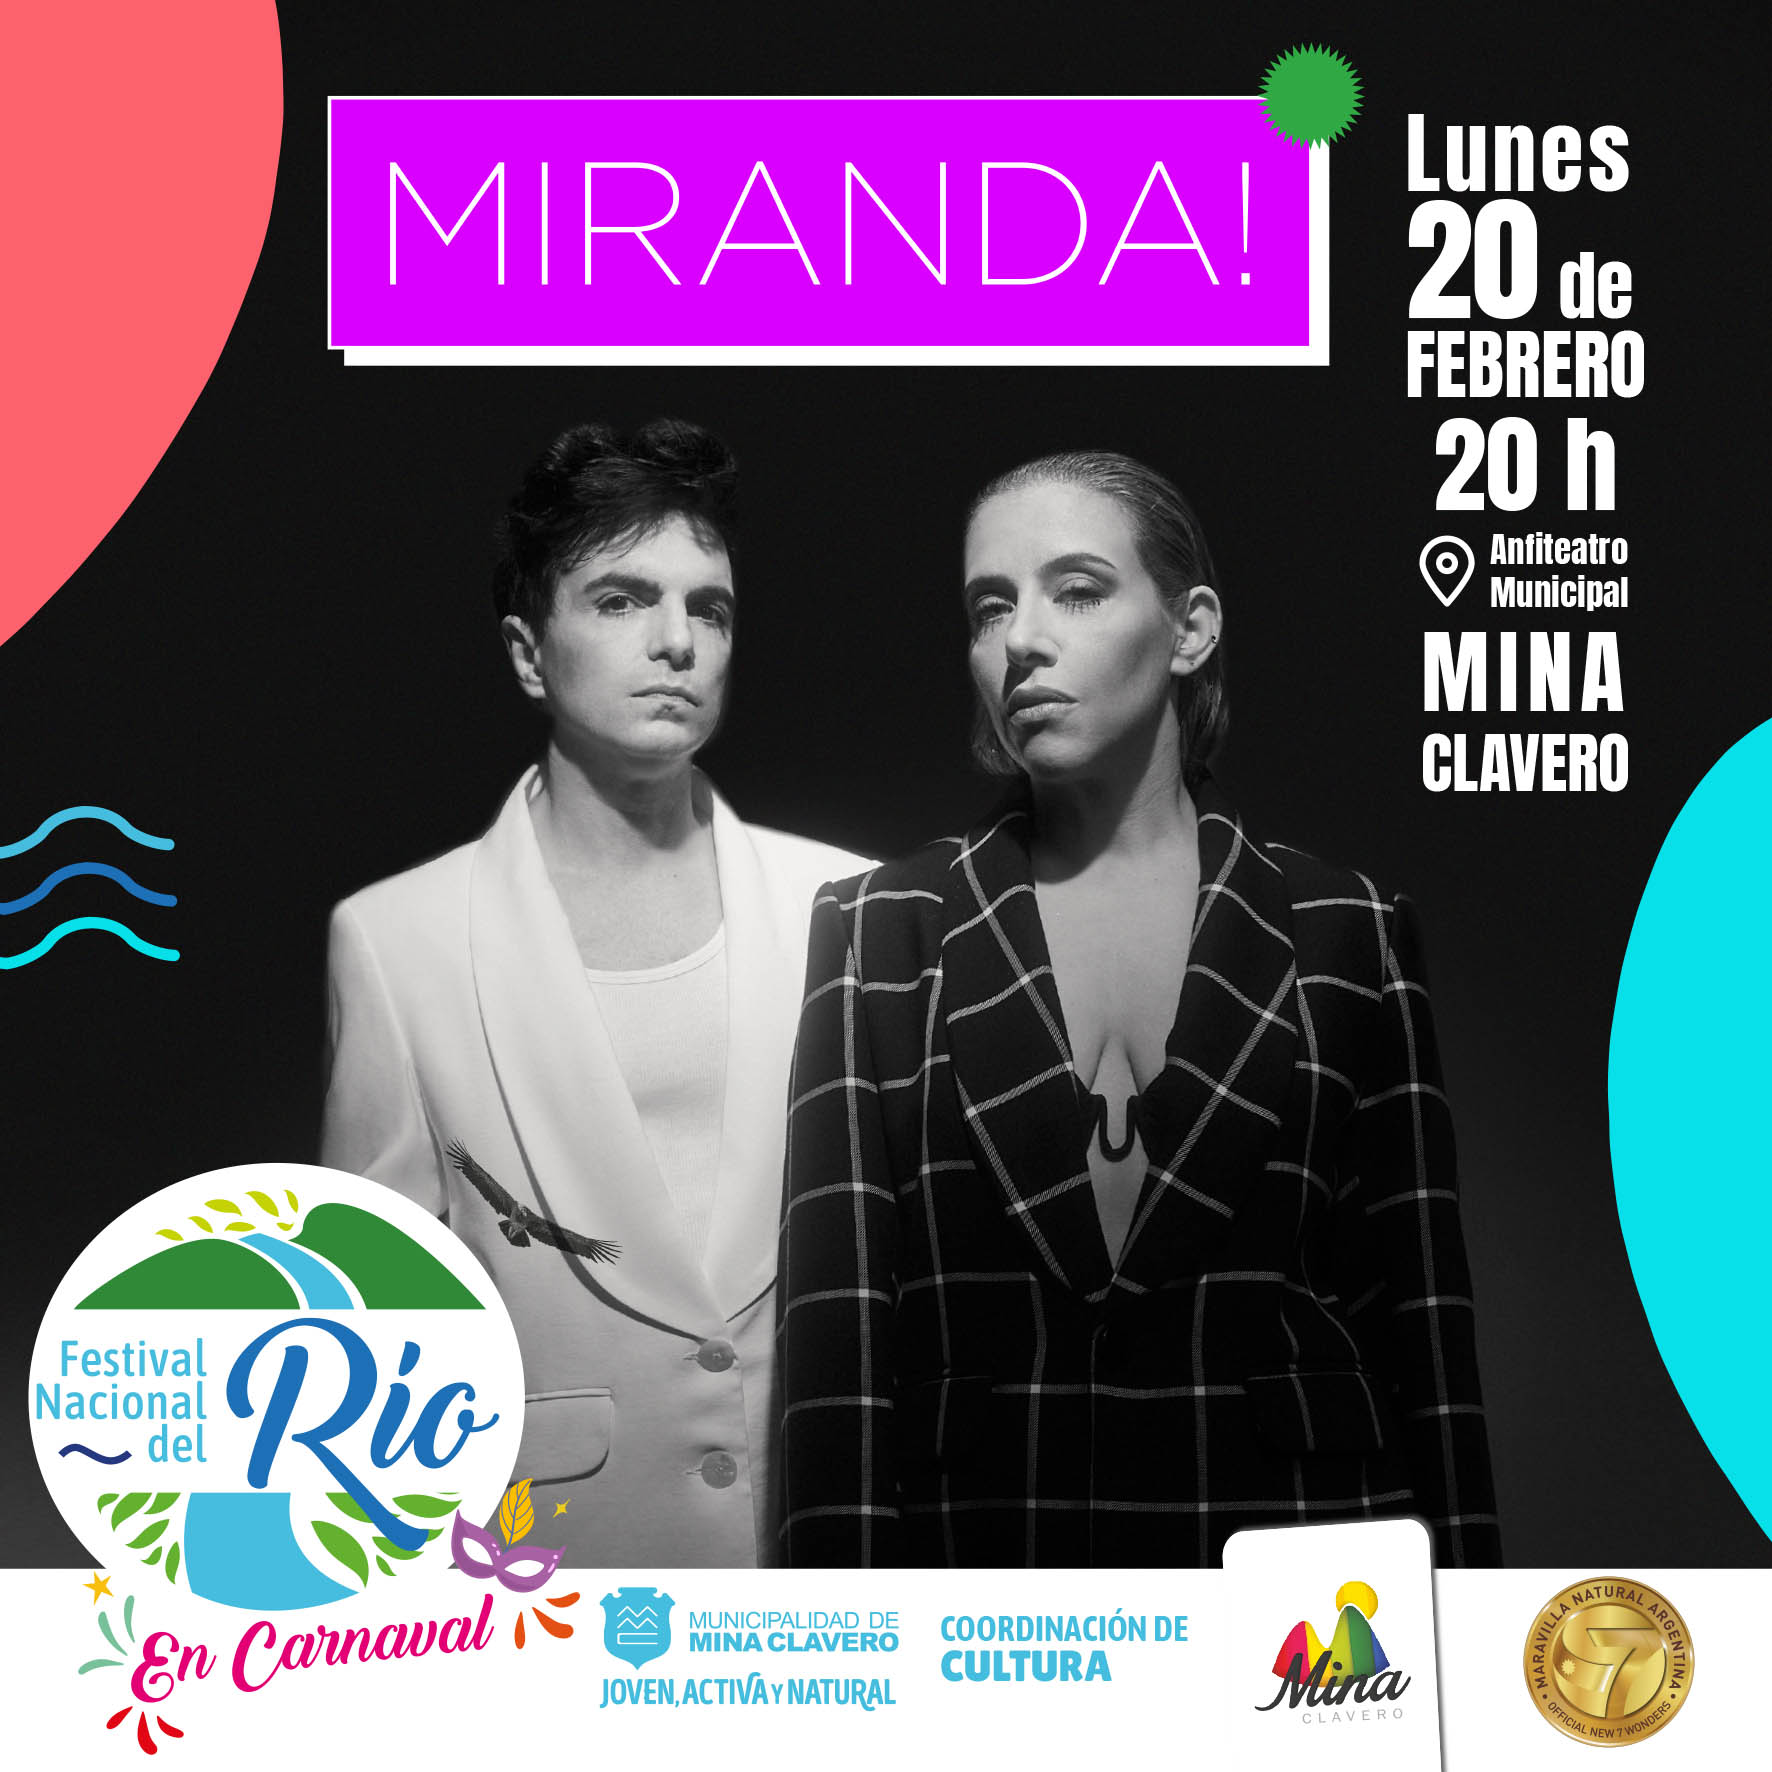 Mina Clavero, se viene el Festival Nacional del Río en Carnaval